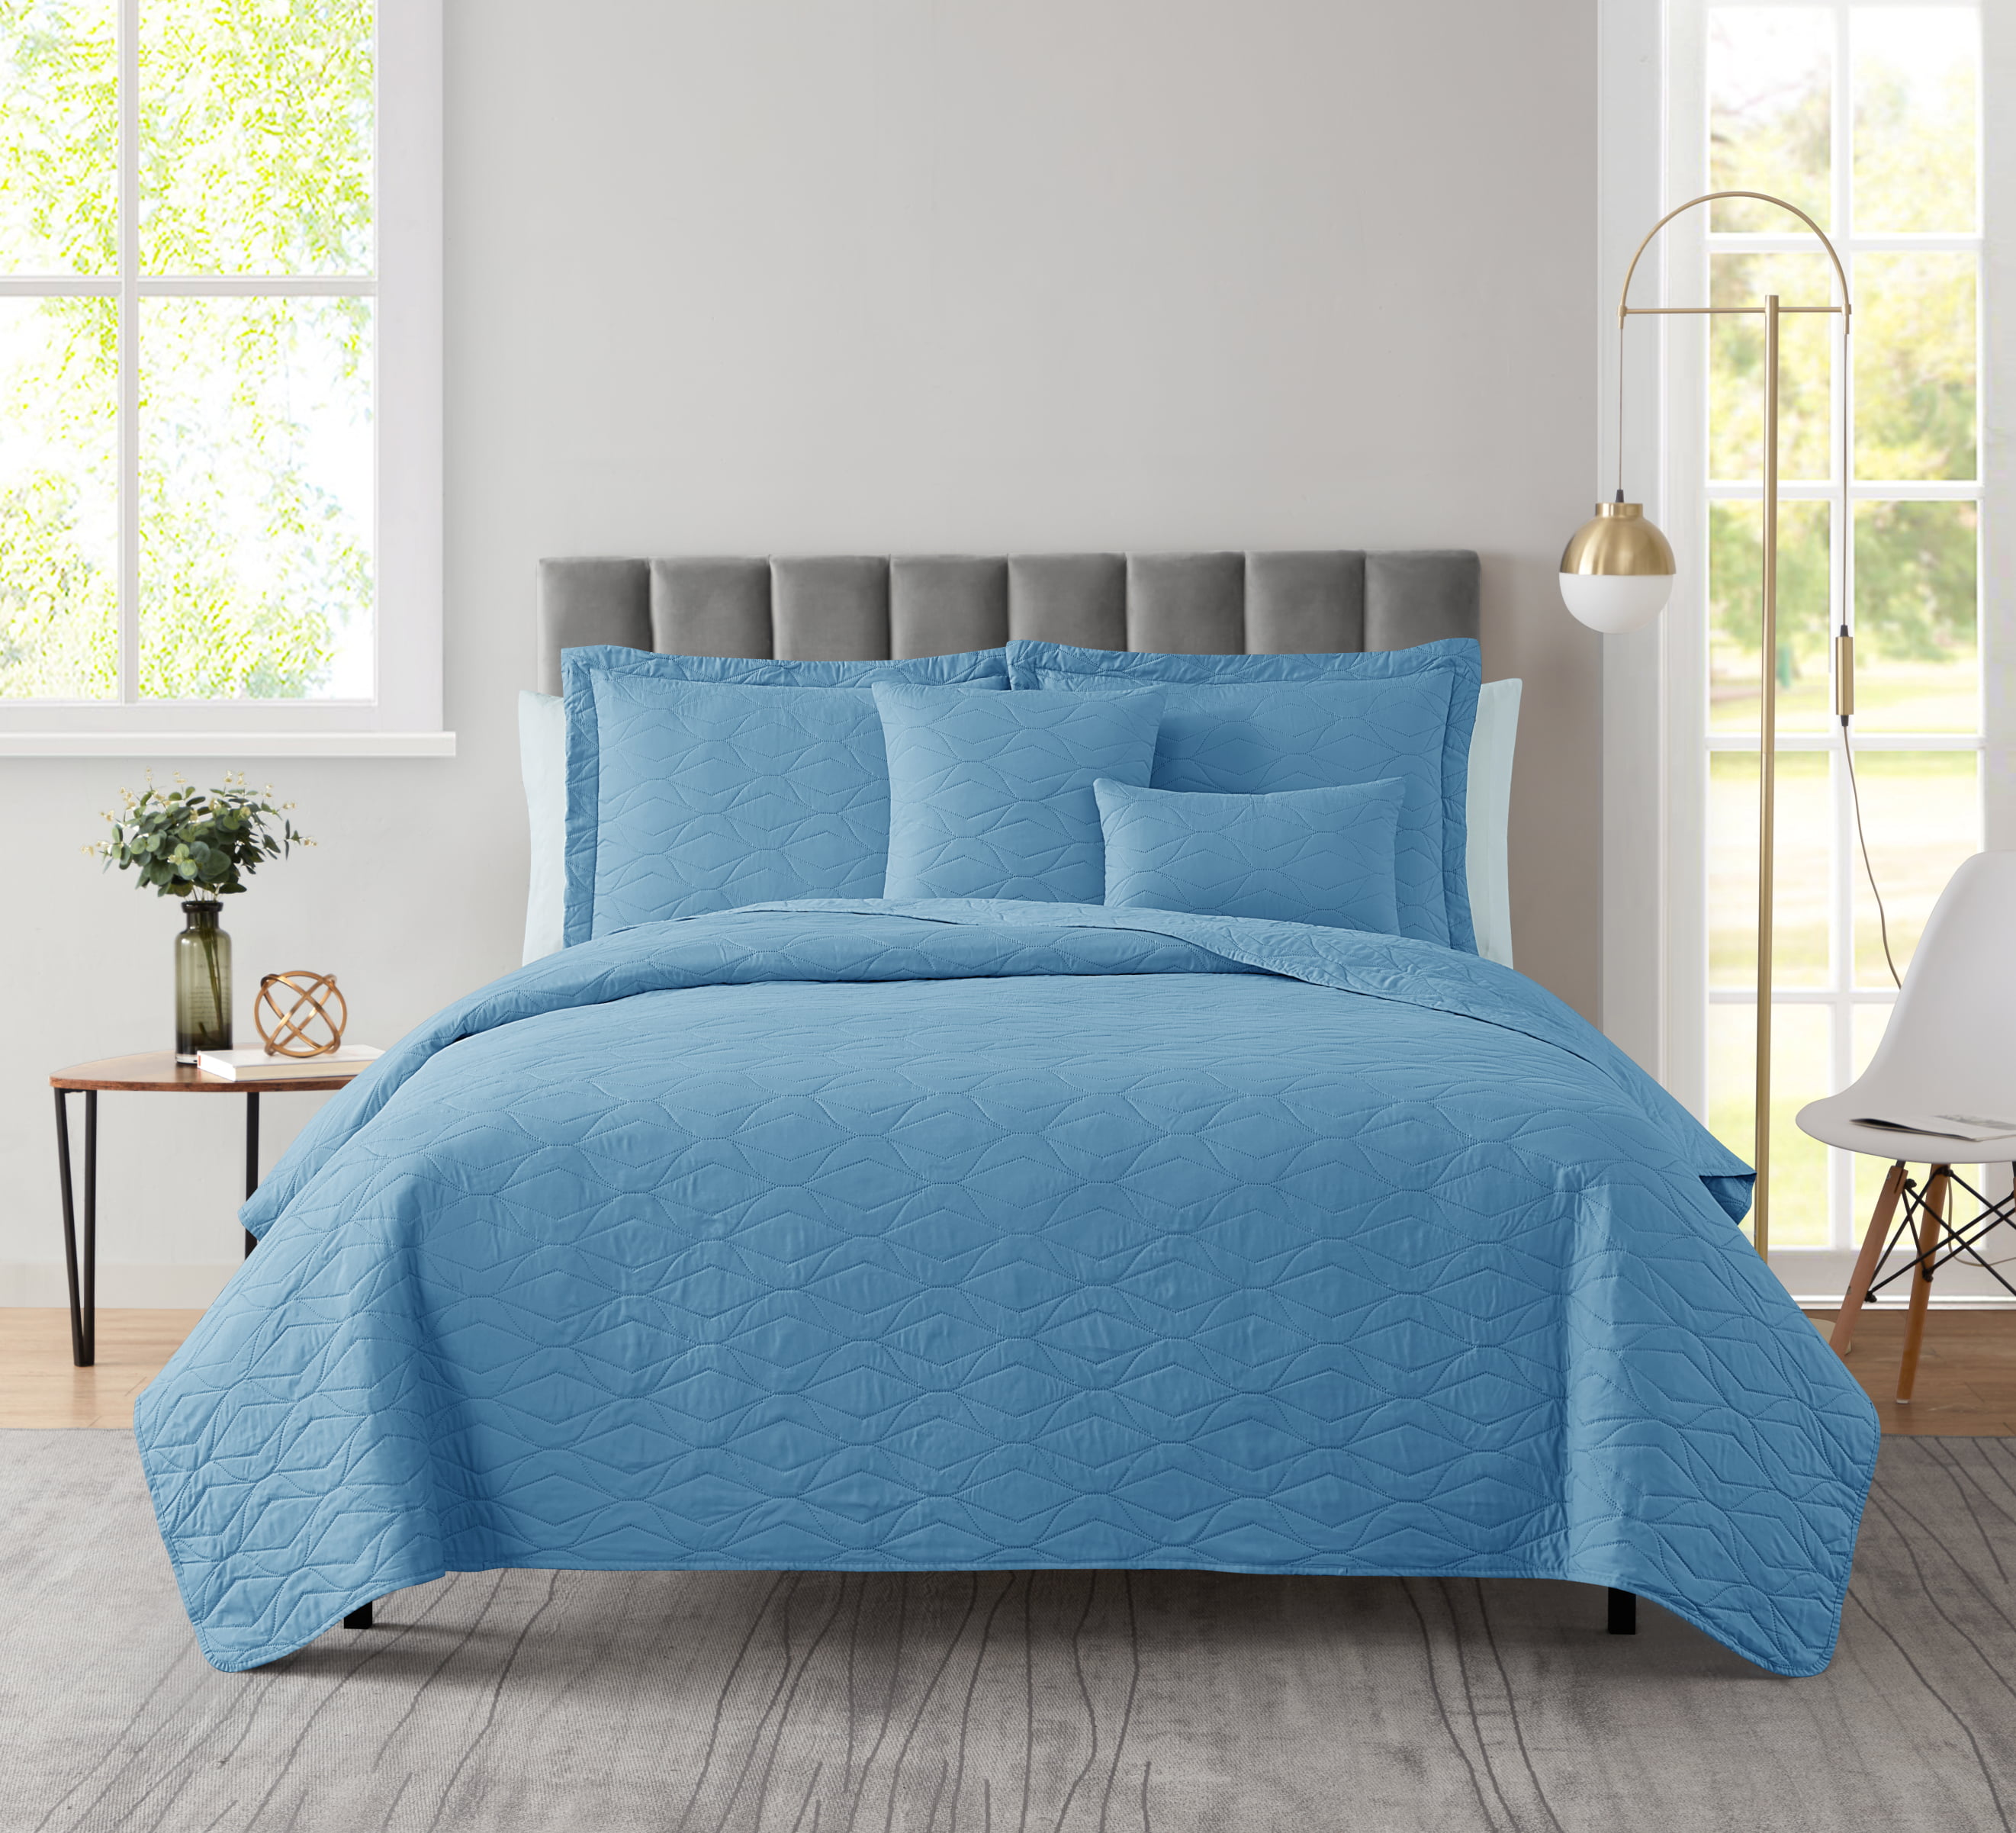 Clara Clark Quilt Set Queen Bedspread, 5-Piece Ellipse Weave Lightweight Coverlet, Blue Heaven - image 3 of 5